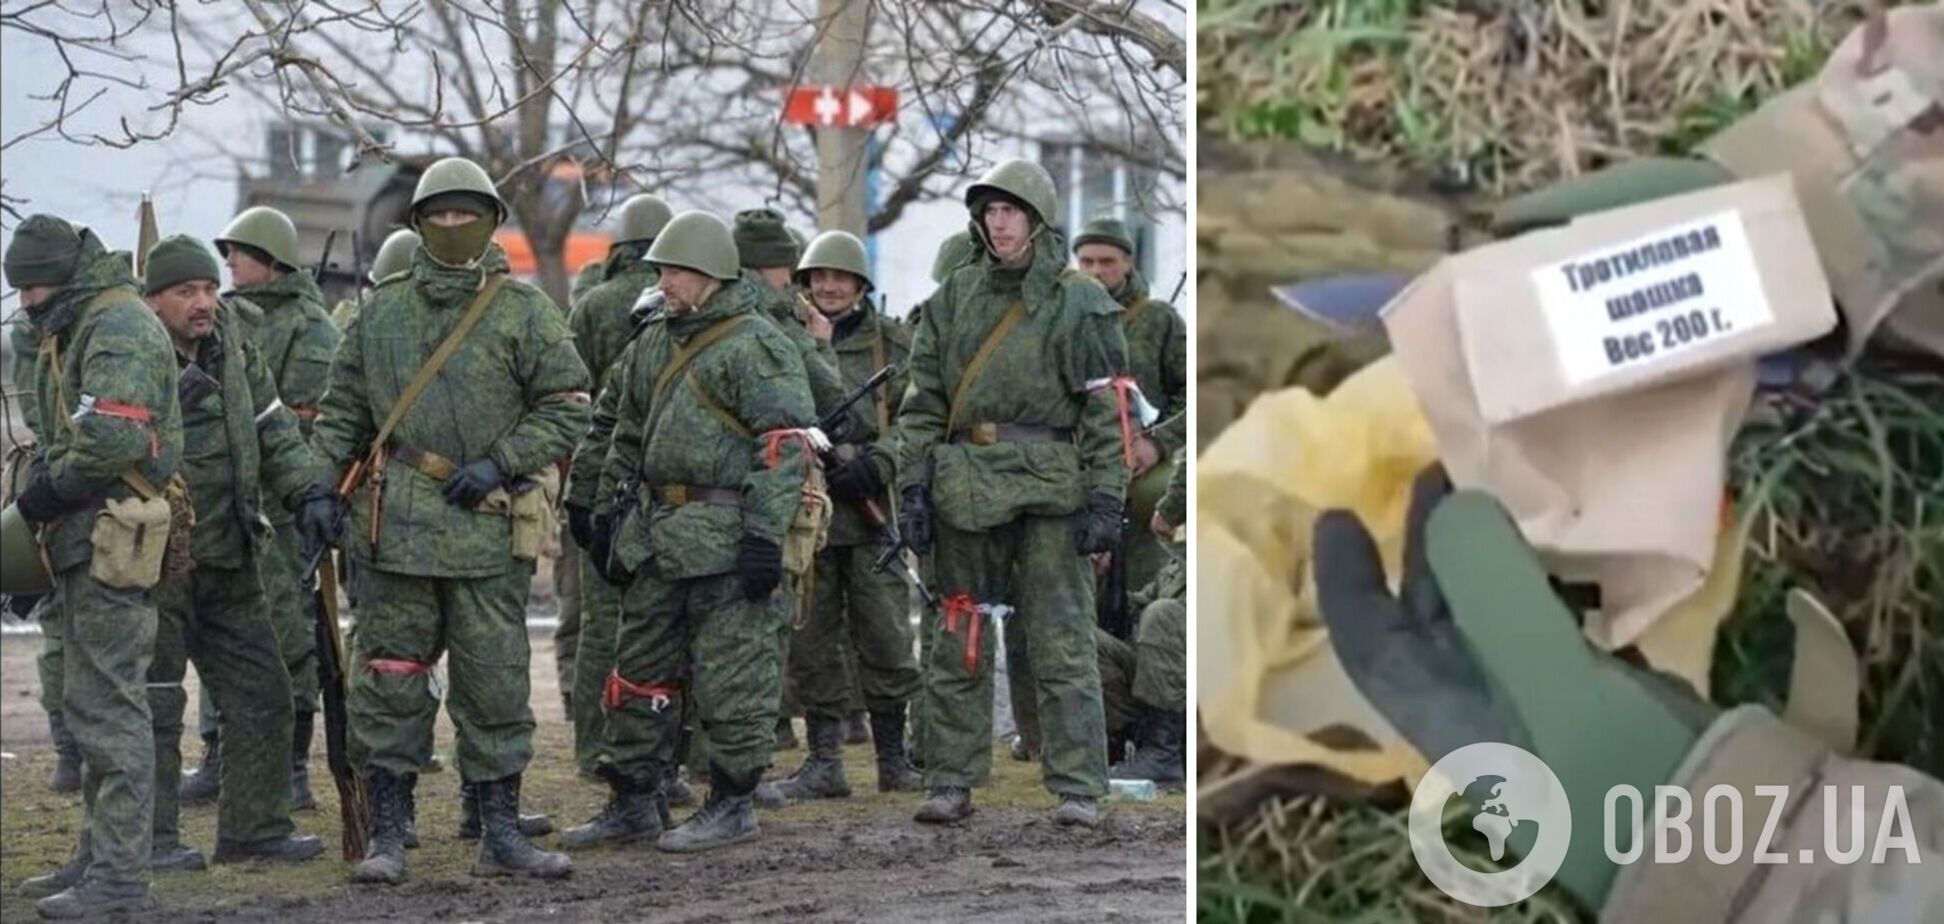 Вместо тротиловой шашки – кусок древесины: в сети показали 'вооружение' российской армии. Видео